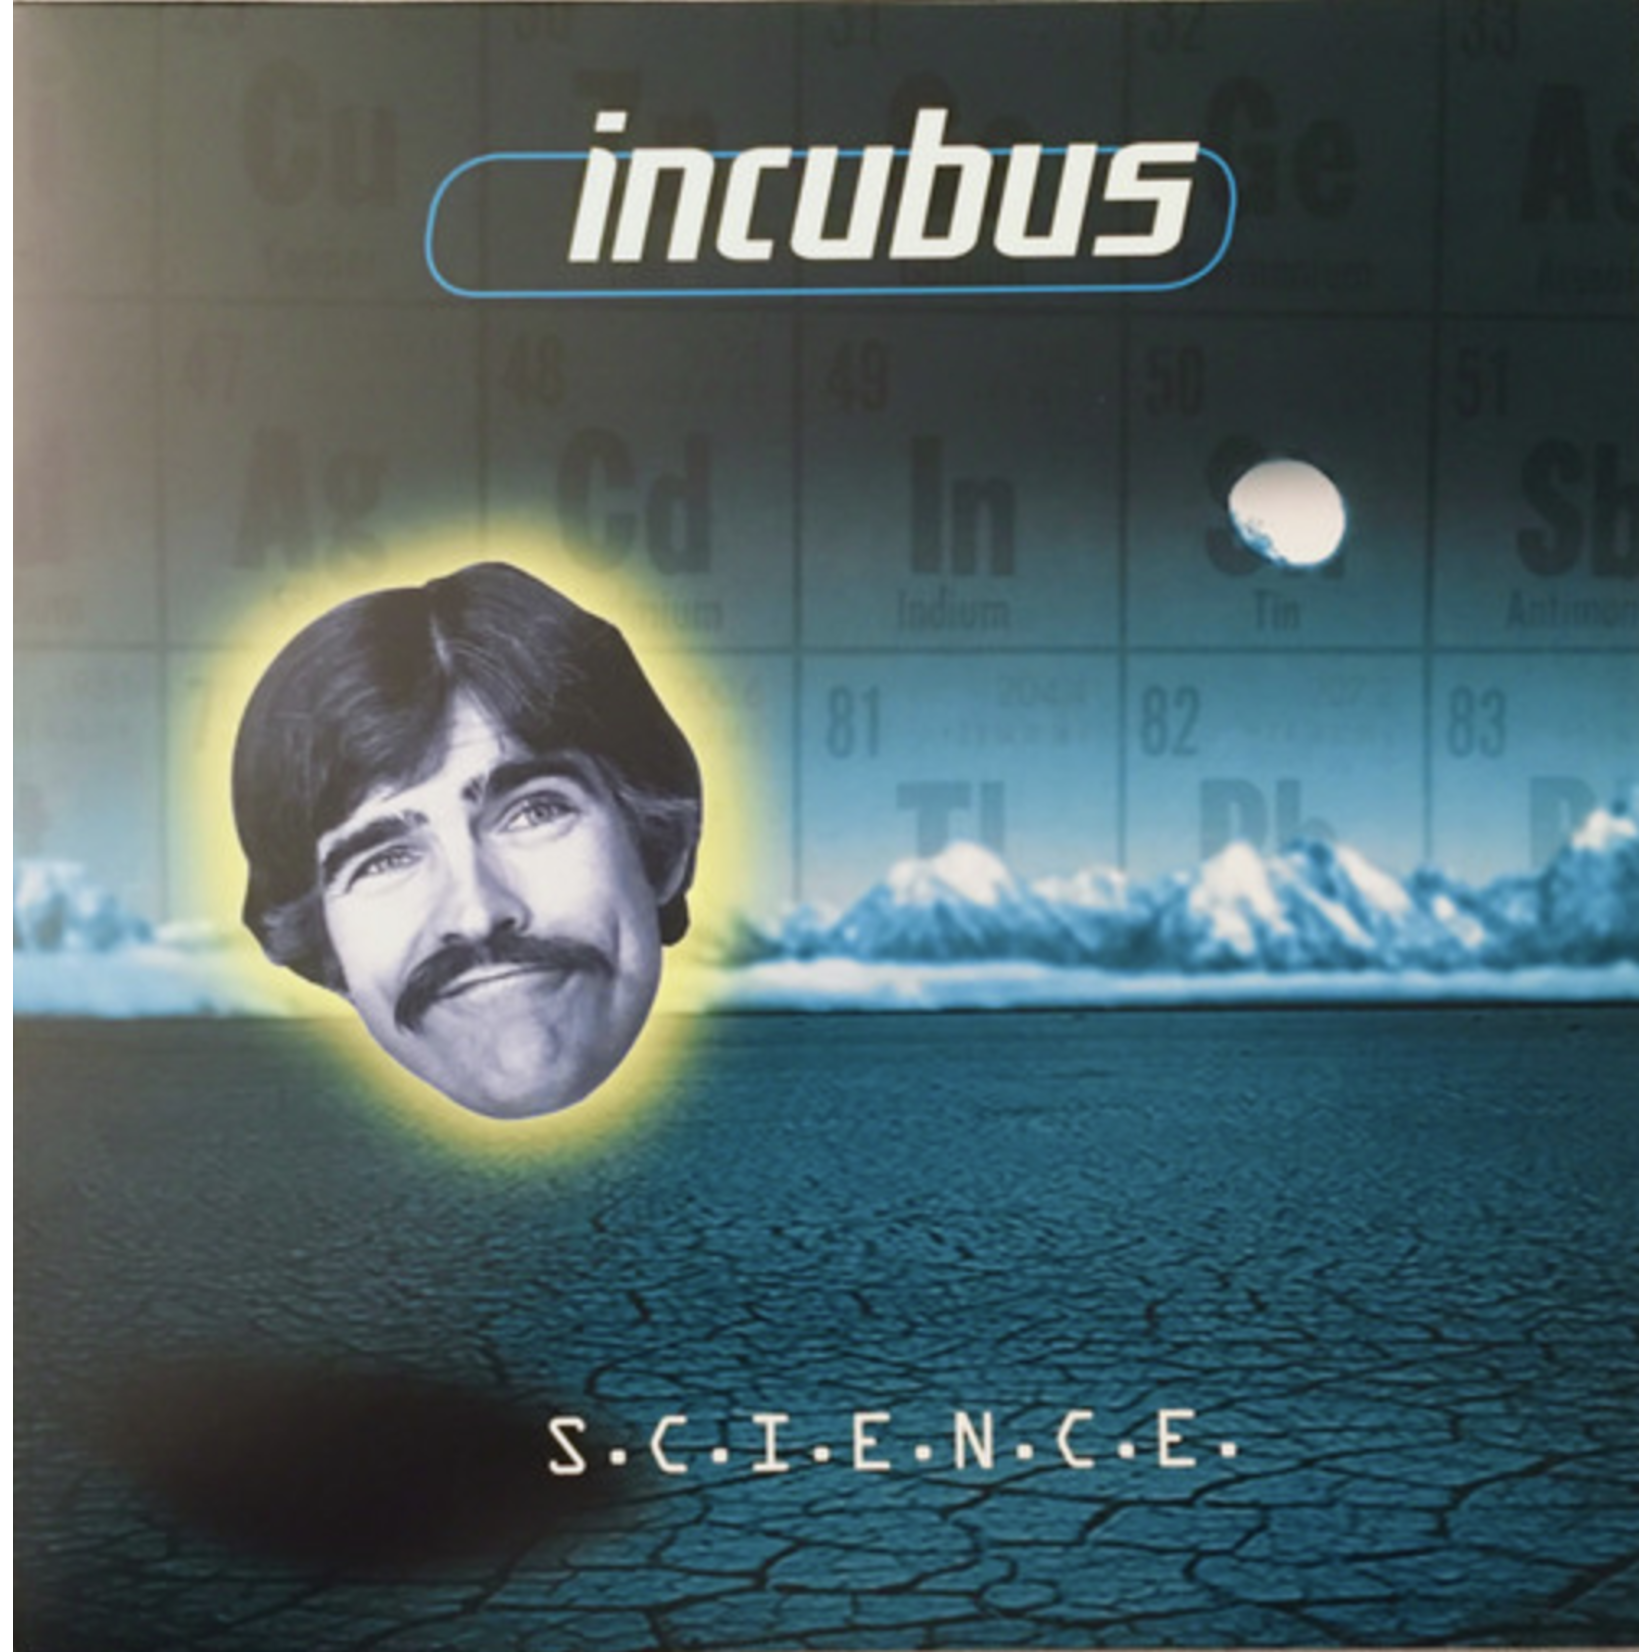 Music on Vinyl Incubus - S.C.I.E.N.C.E. (2LP)